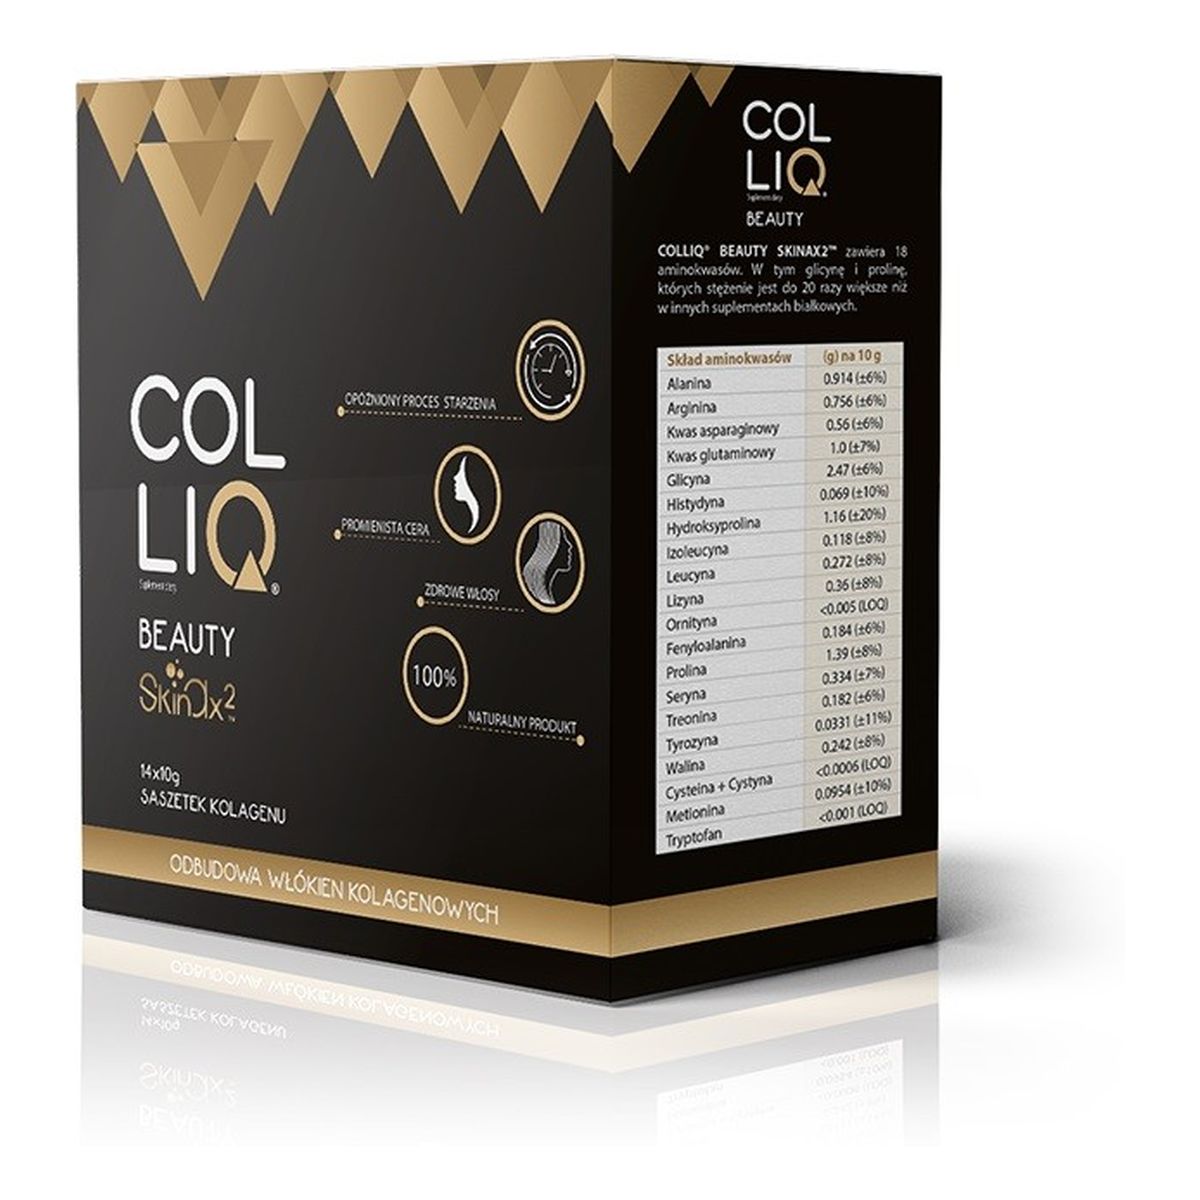 Colliq Beauty Skinax2 odbudowa organizmu od wewnątrz Kolagen w proszku 450g